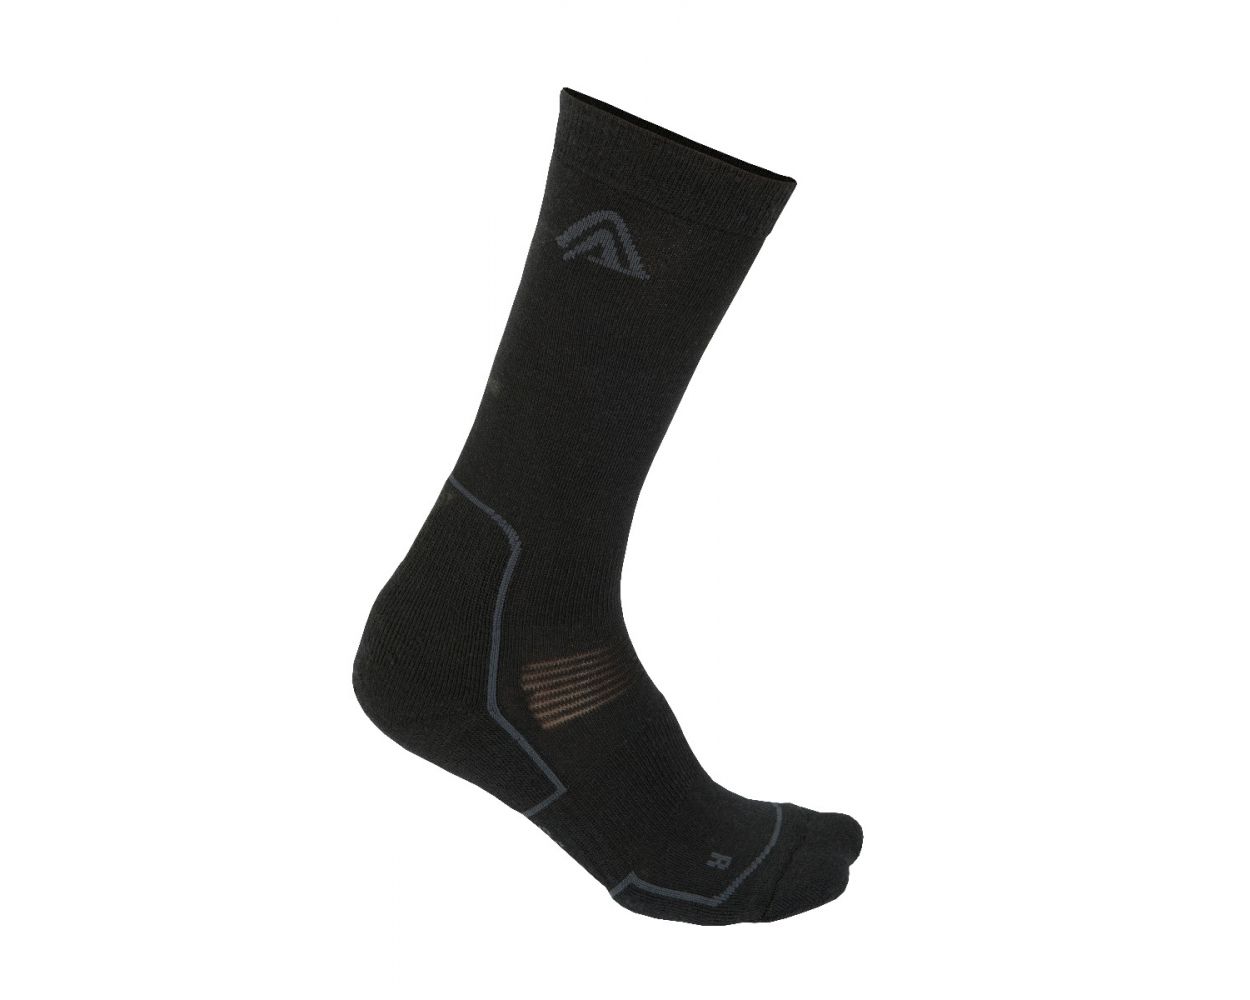 Stoic Merino Trekking Crew Socks - Calcetines de trekking, Comprar online